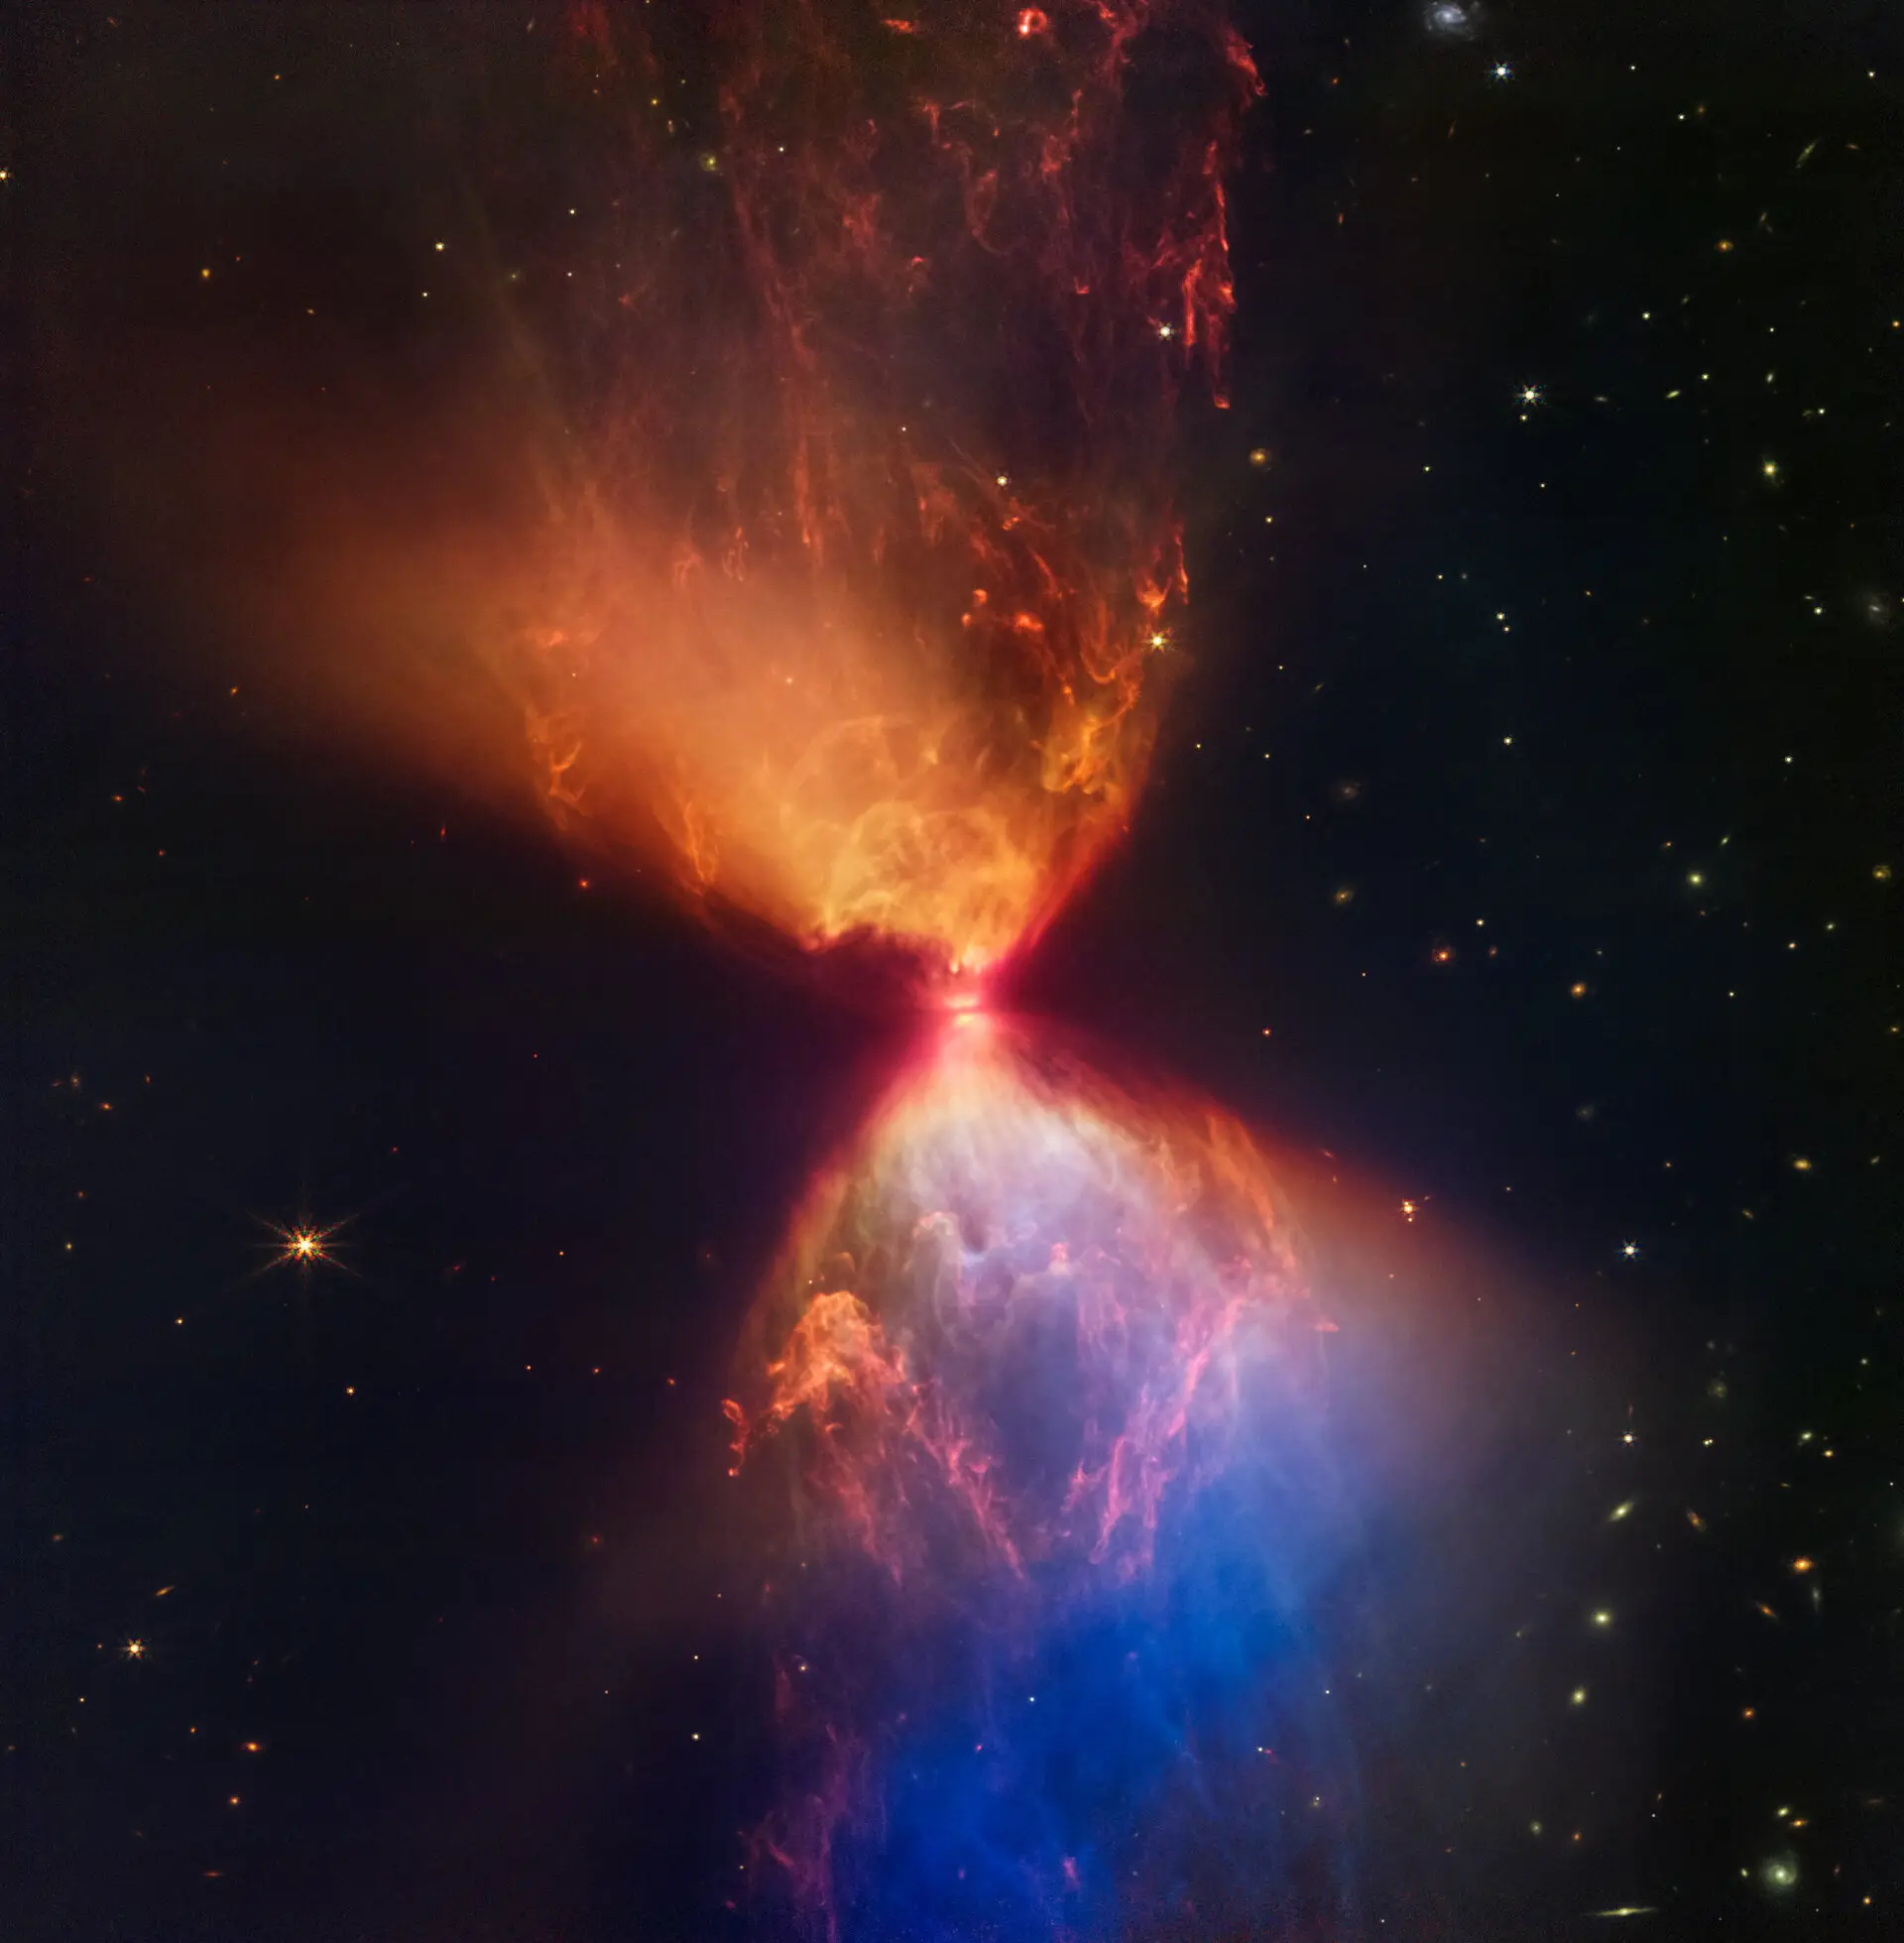 A ampulheta colorida que mostra o nascimento de uma estrela